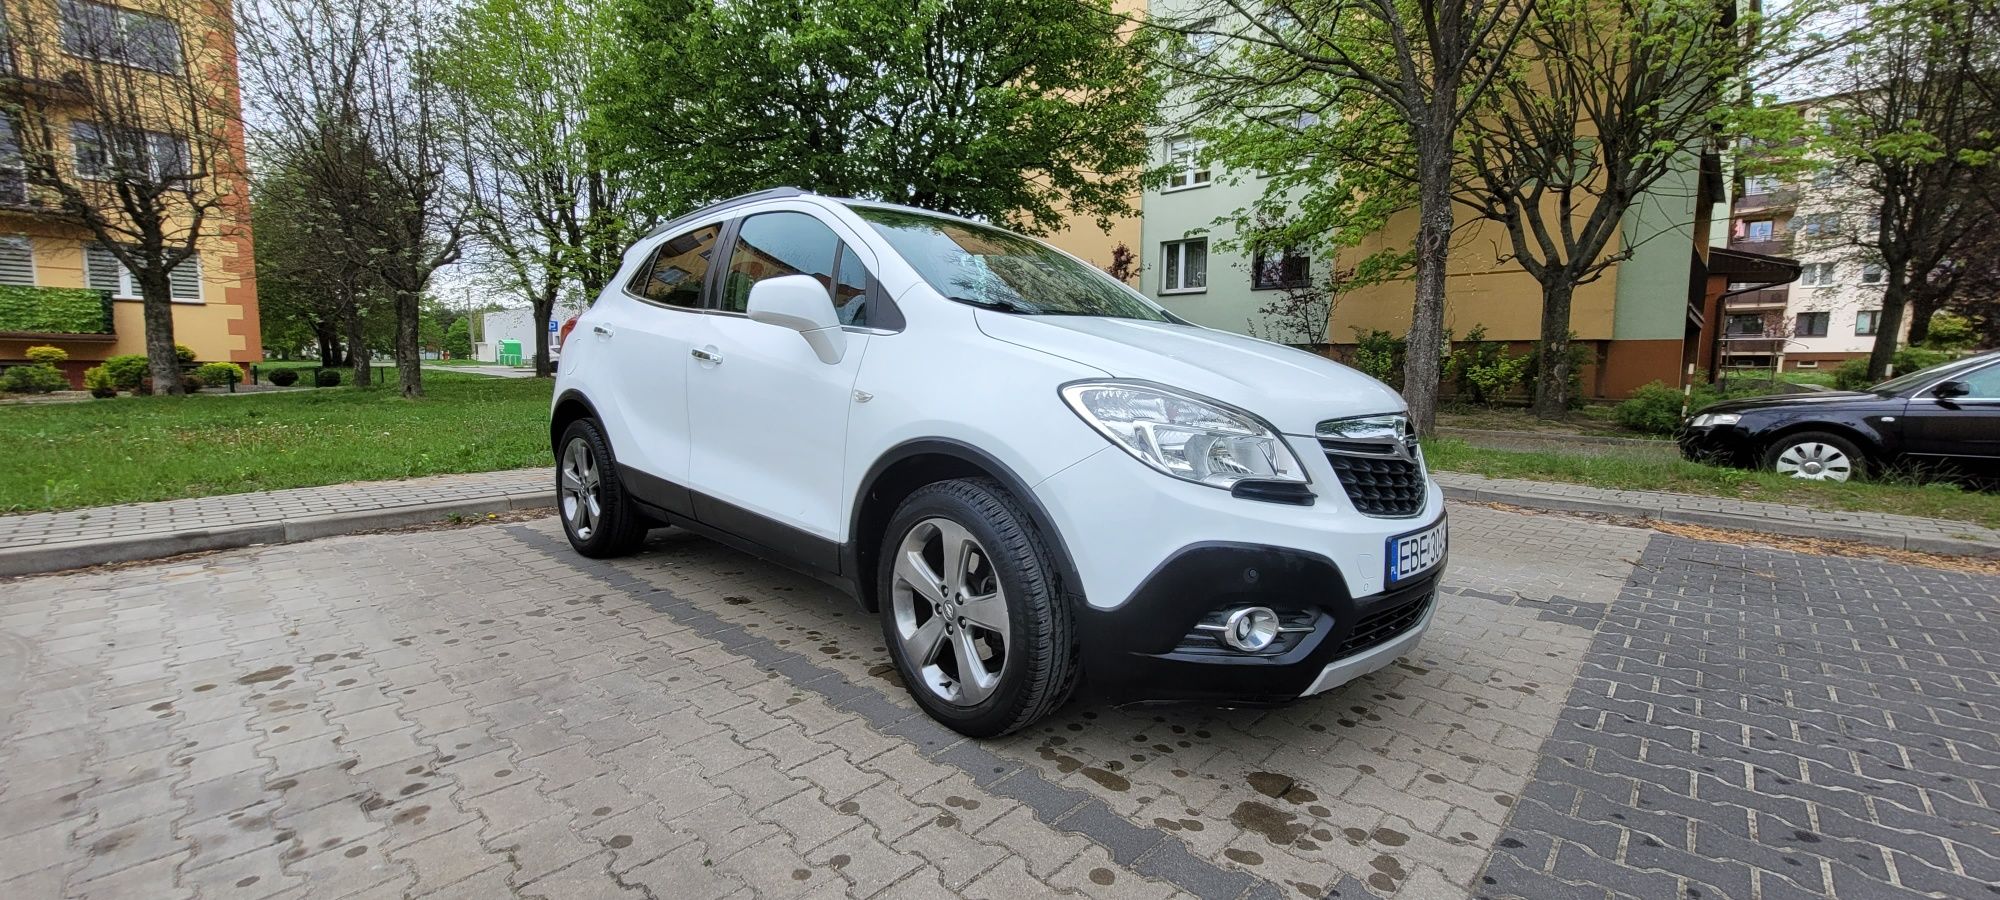 Opel Mokka 1.7cdti 130km 4x4